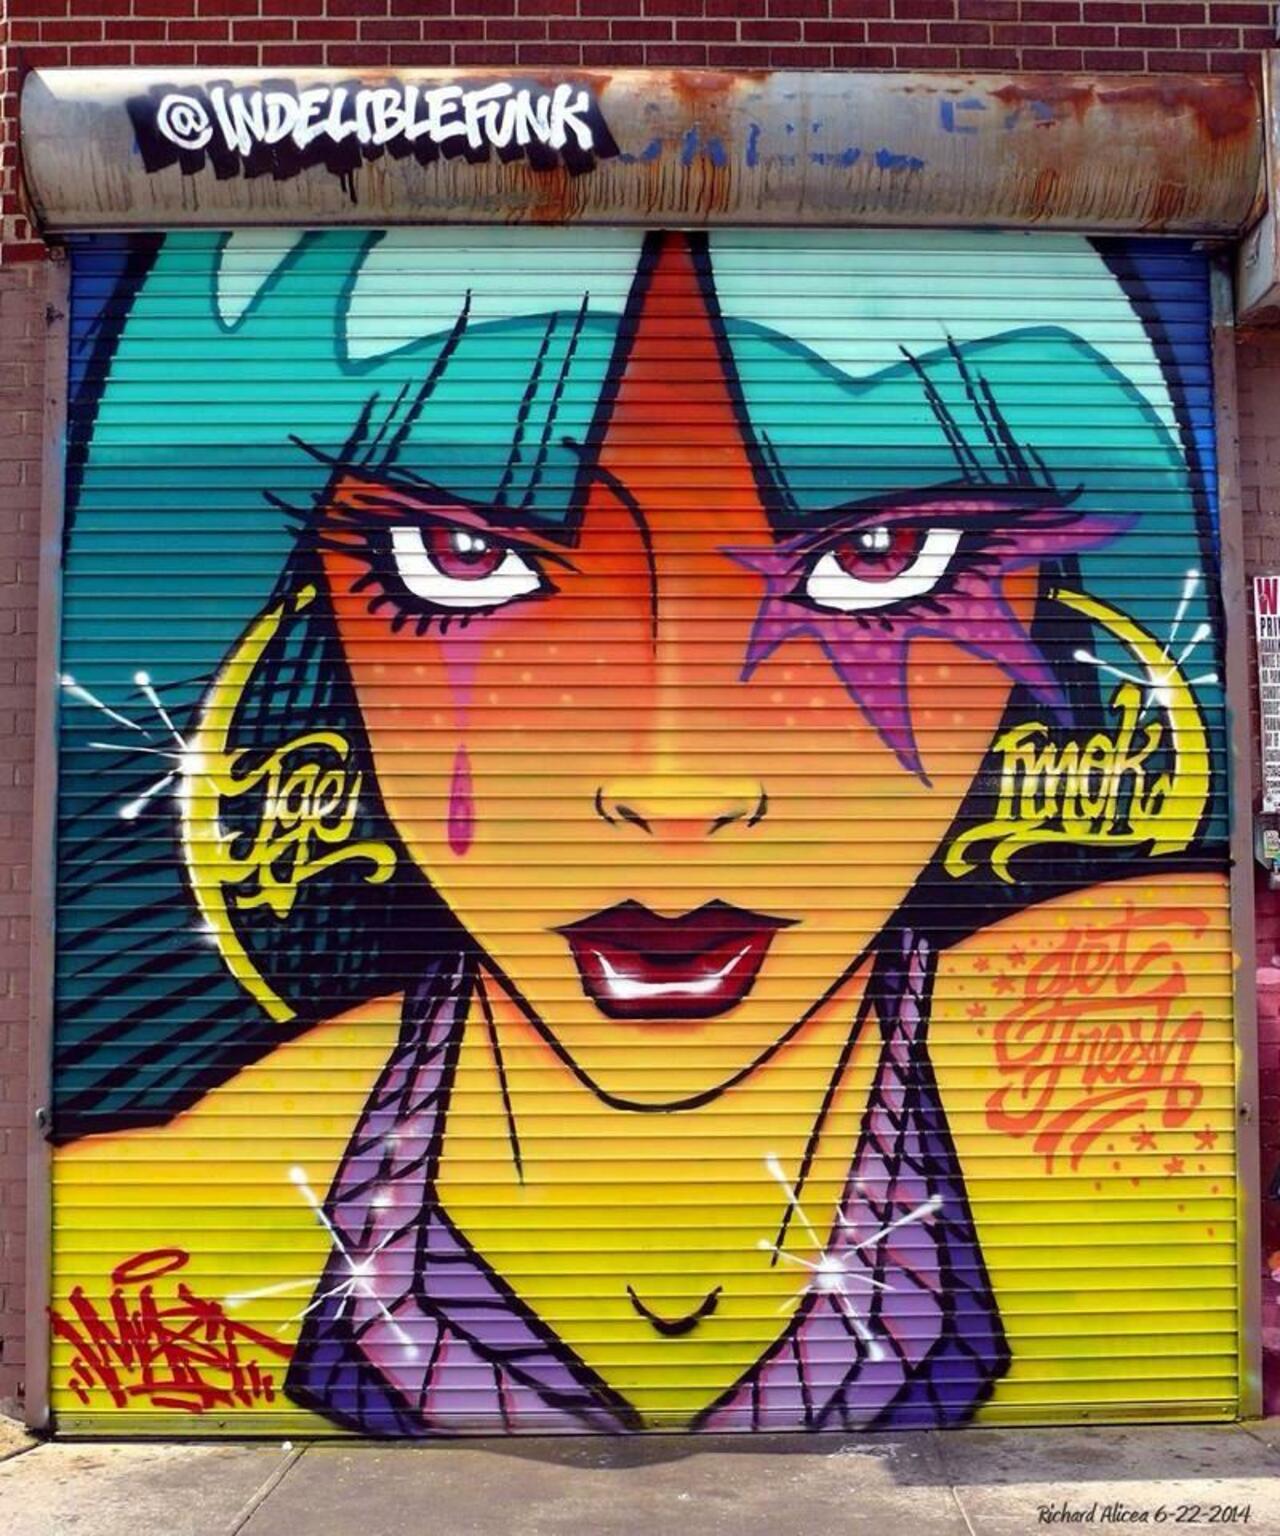 Artist 'Indeliblefunk' new Street Art work at Welling Court Queens, NY #art #mural #graffiti #streetart http://t.co/x8lEZUS0uj